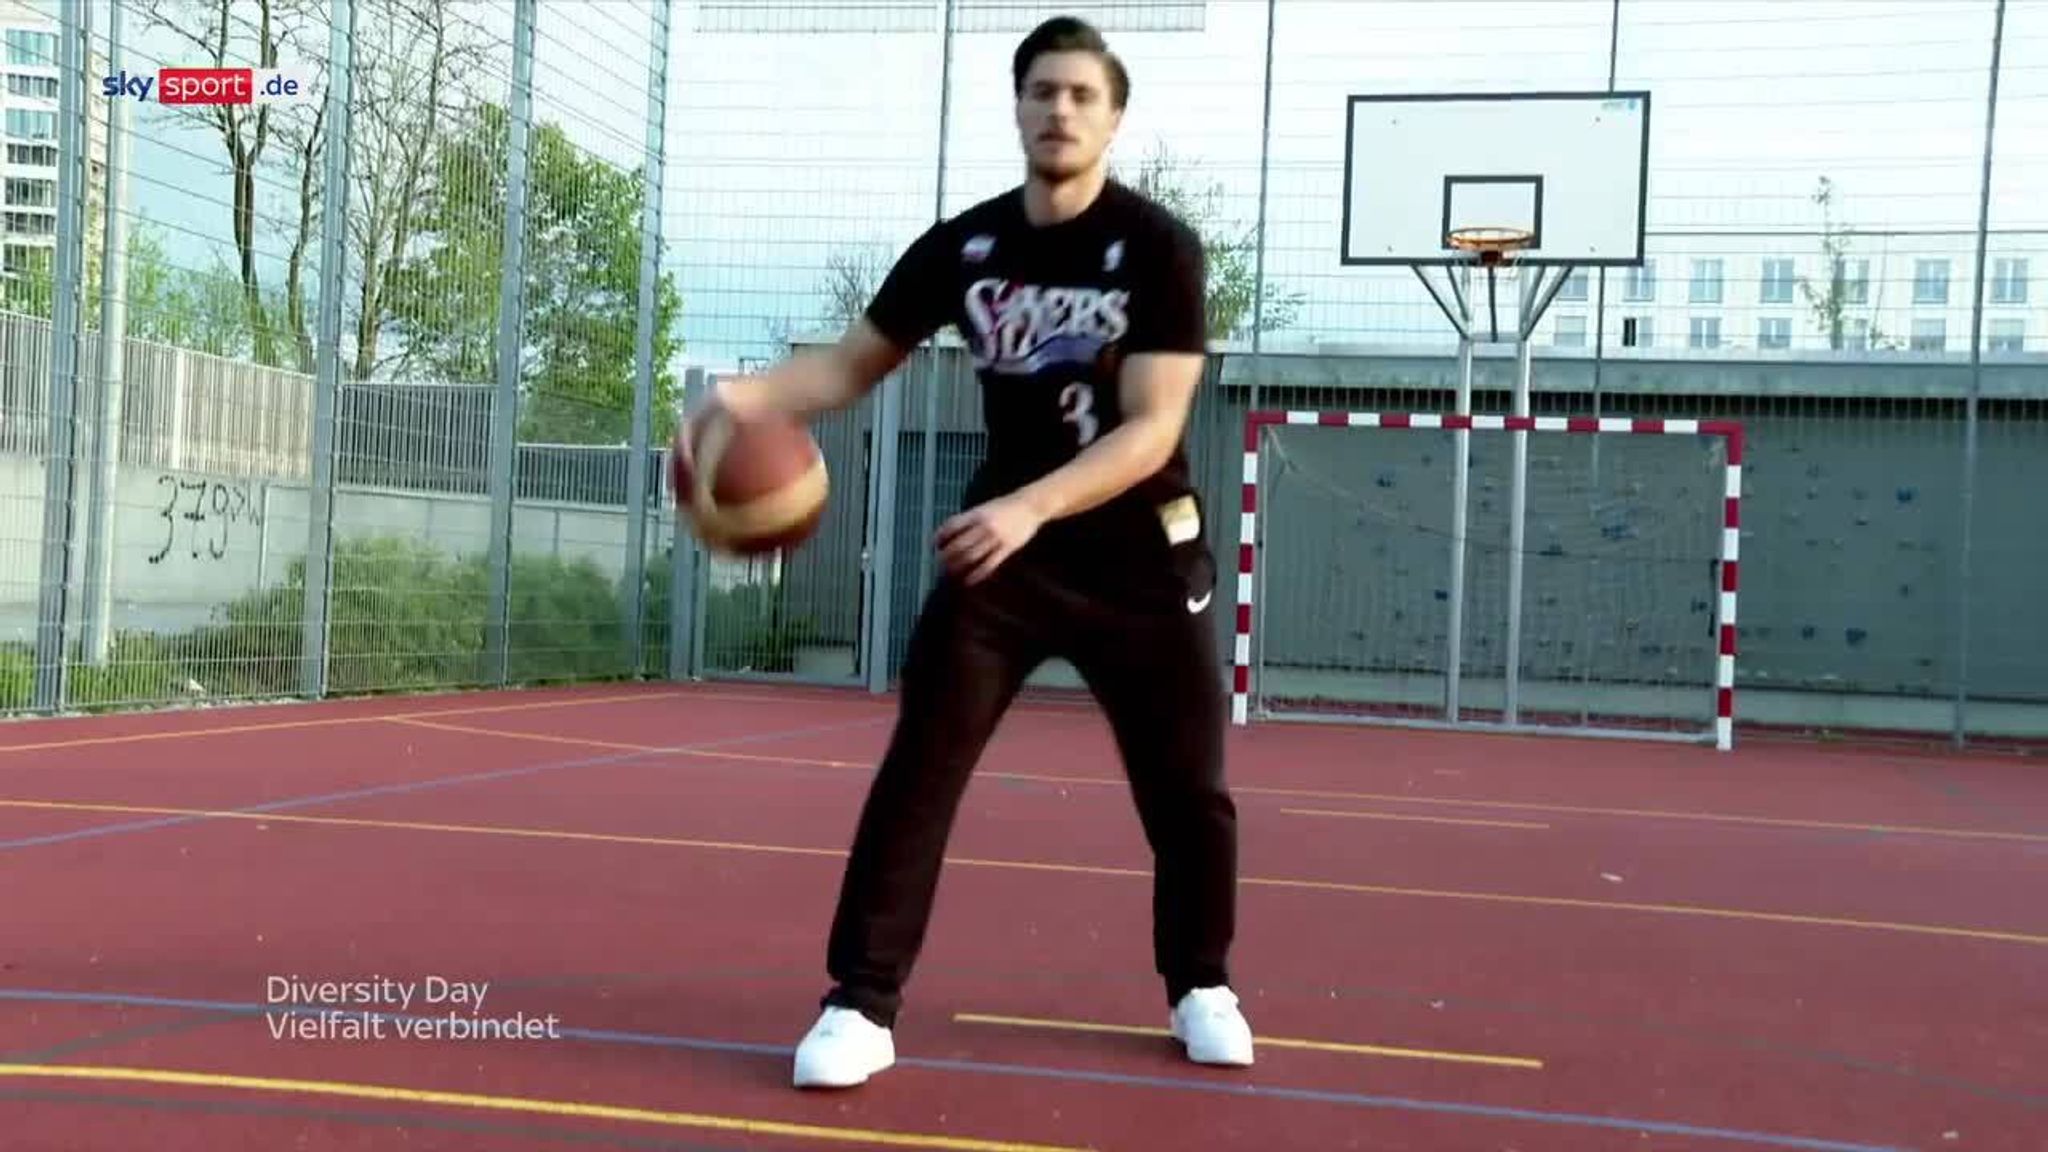 Basketball BasKIDball